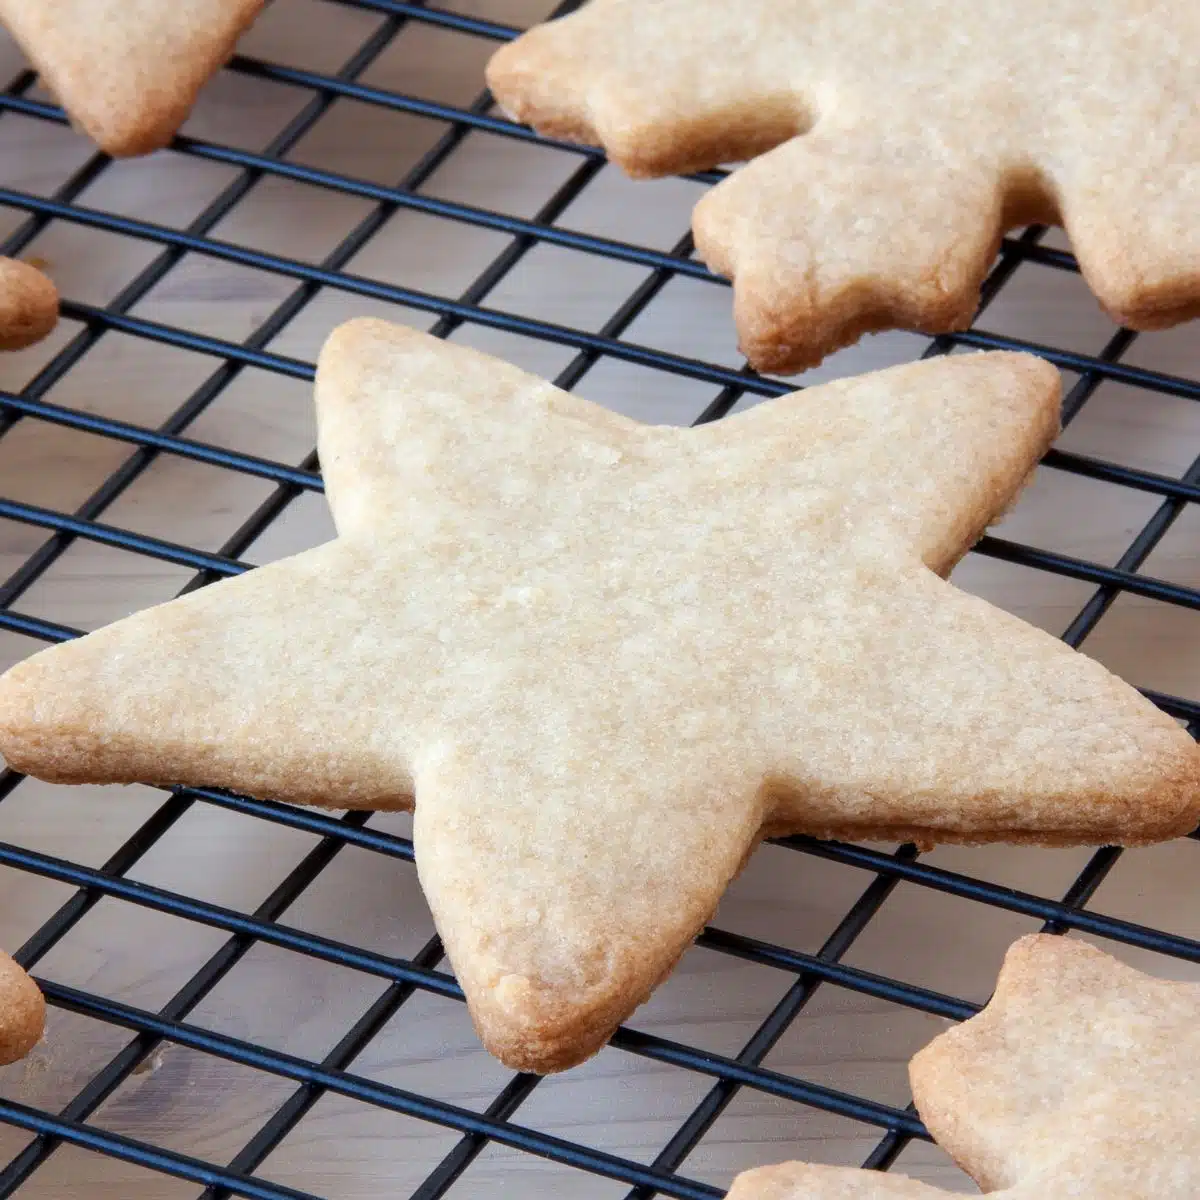 냉각 선반에 구운 별 모양의 설탕 쿠키의 정사각형 이미지.